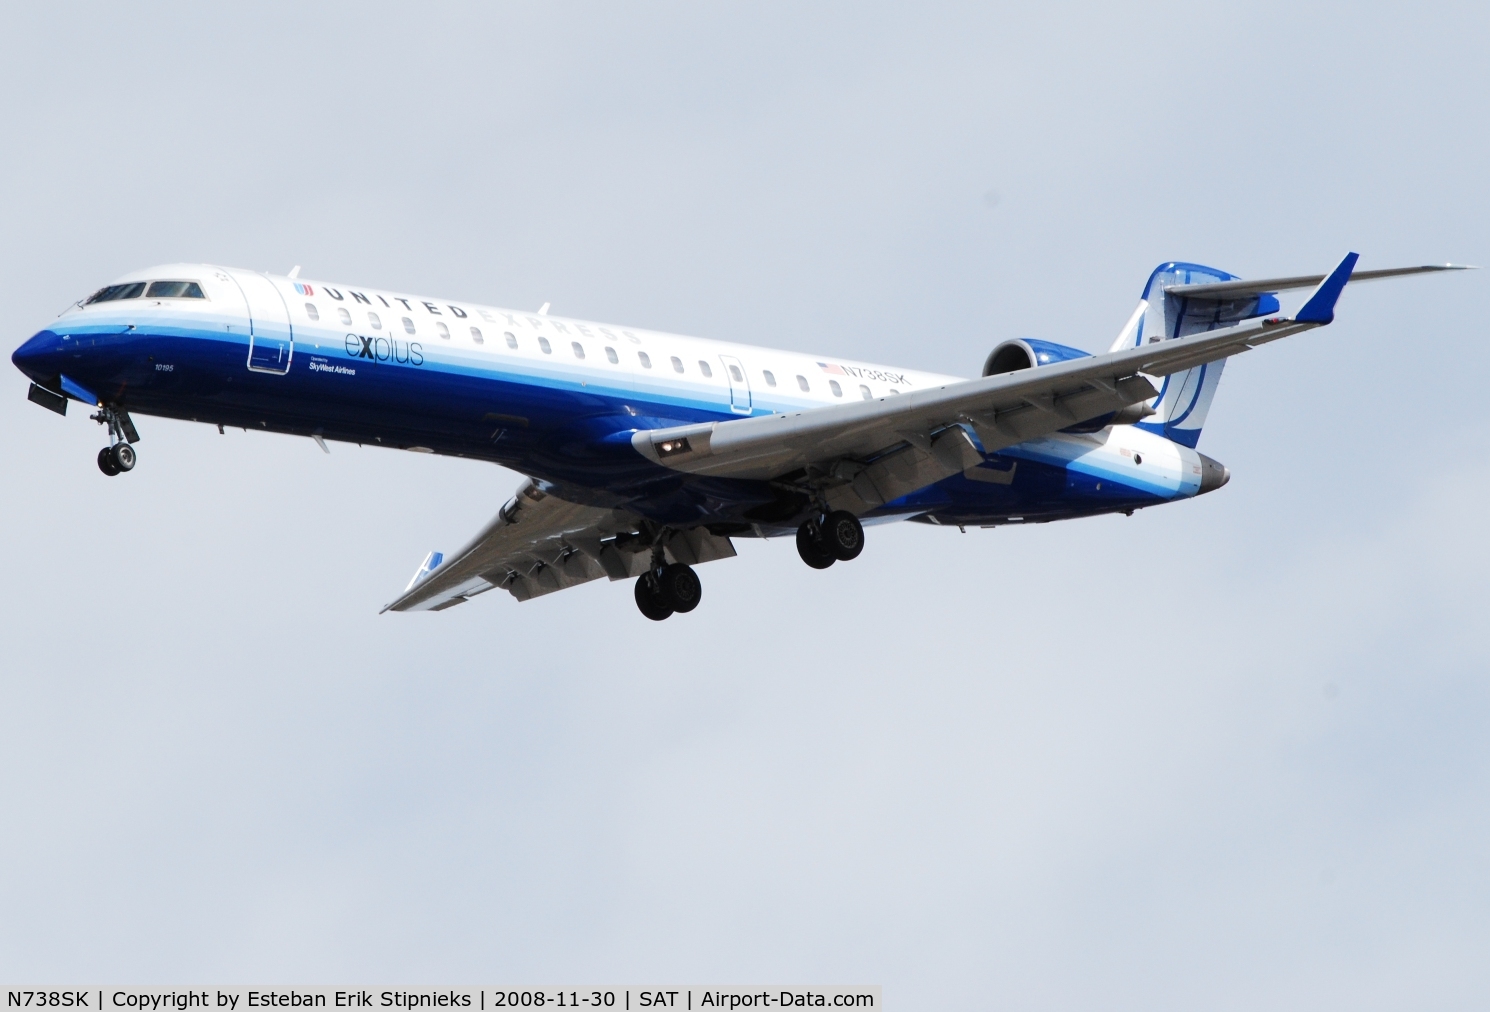 N738SK, 2005 Bombardier CRJ-700 (CL-600-2C10) Regional Jet C/N 10195, Seconds before touchdown  30 L SAT